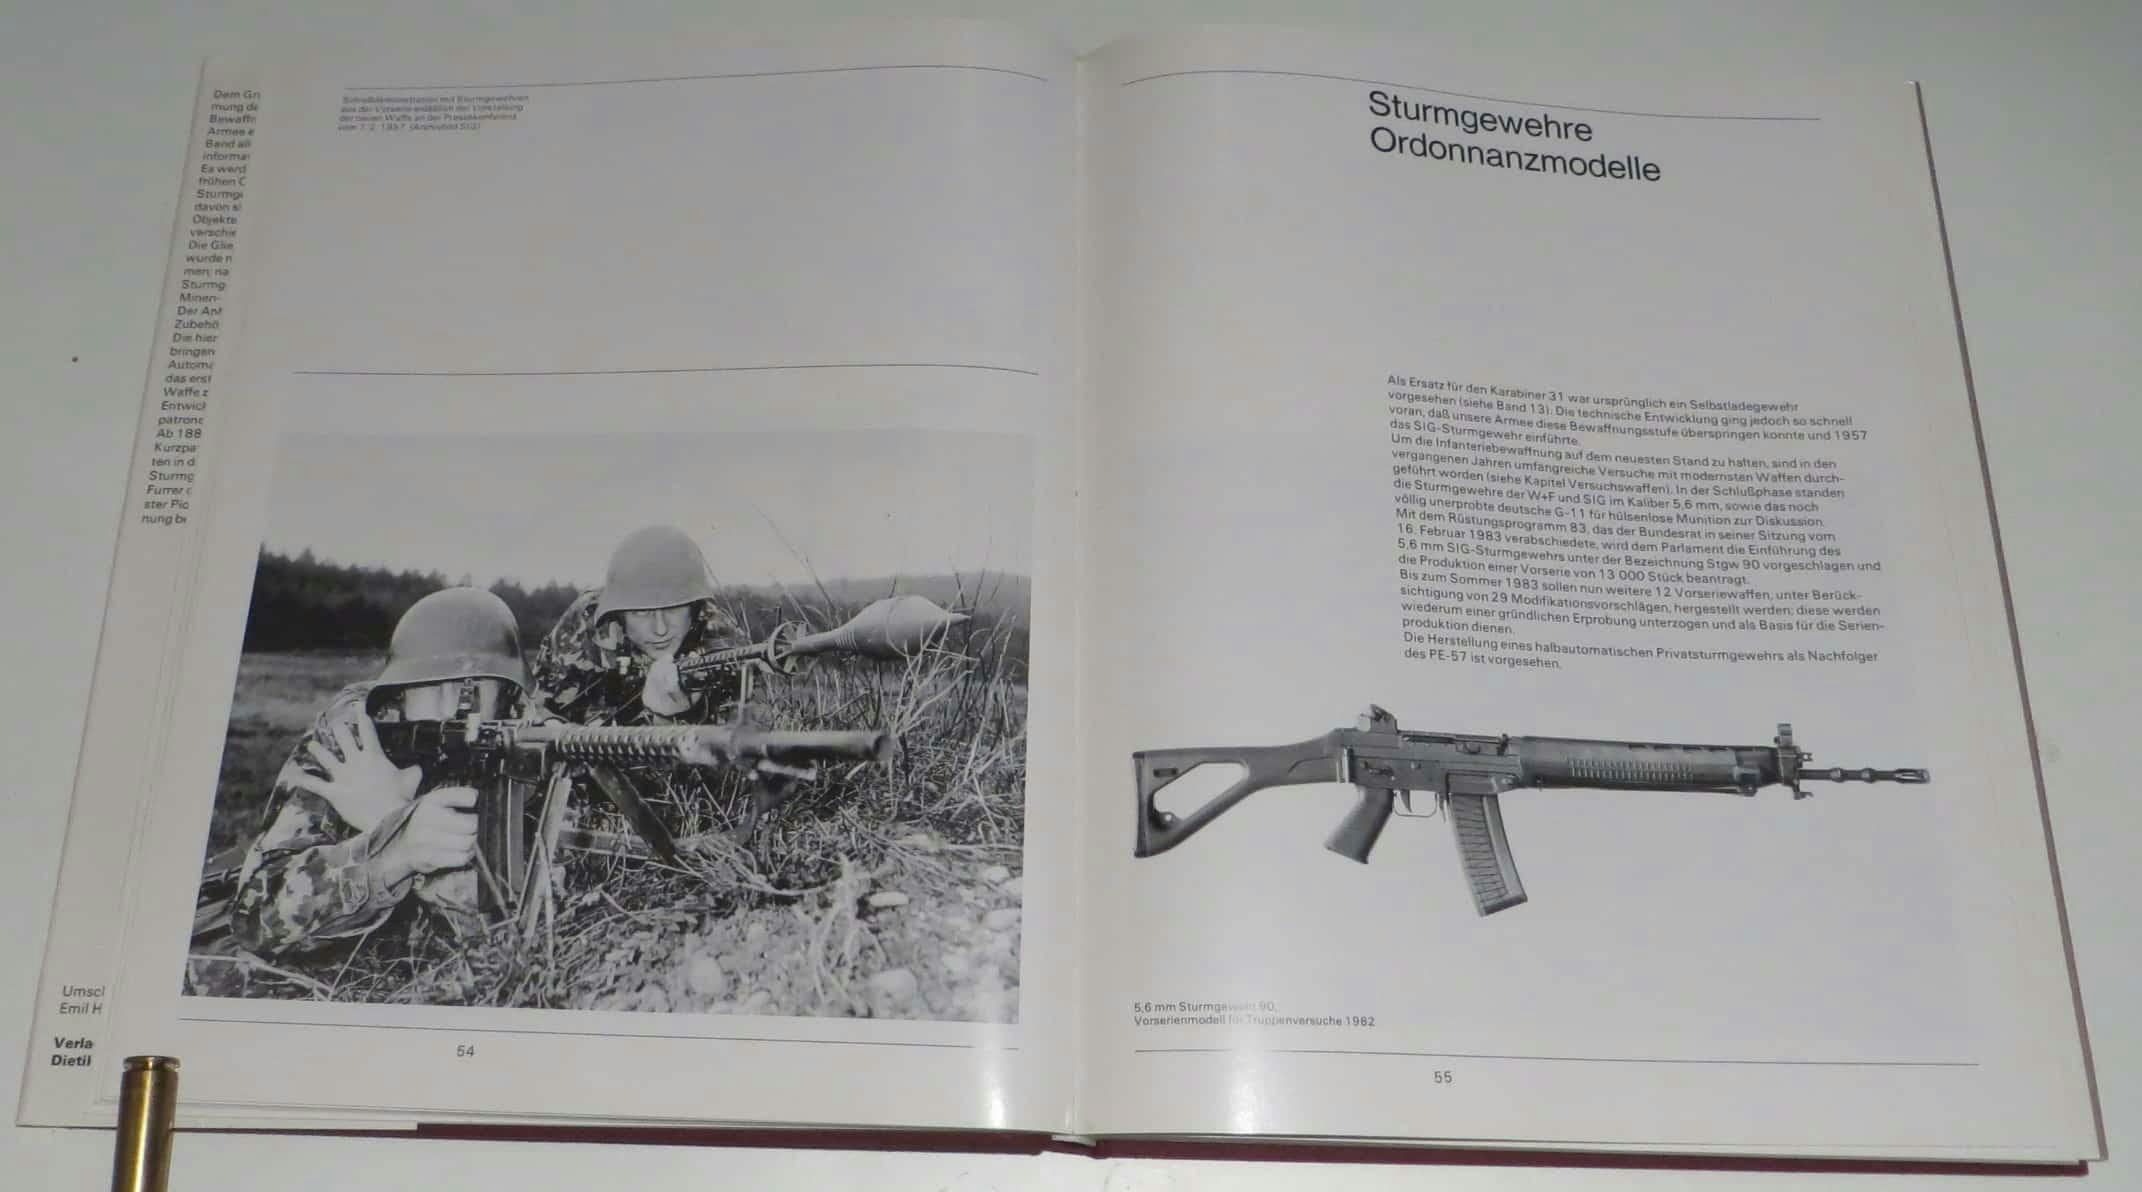 Das Kapitel "Sturmgewehre Ordonnanzmodelle". Da das Buch 1983 erschienen ist, ist das Stgw57 das einzige Sturmgewehr dieses Kapitels, da sich das abgebildete Stgw90 noch in der Entwicklung befand. Links eine Schiessdemonstration mit dem Stgw57, inklusive Panzerrunggle.